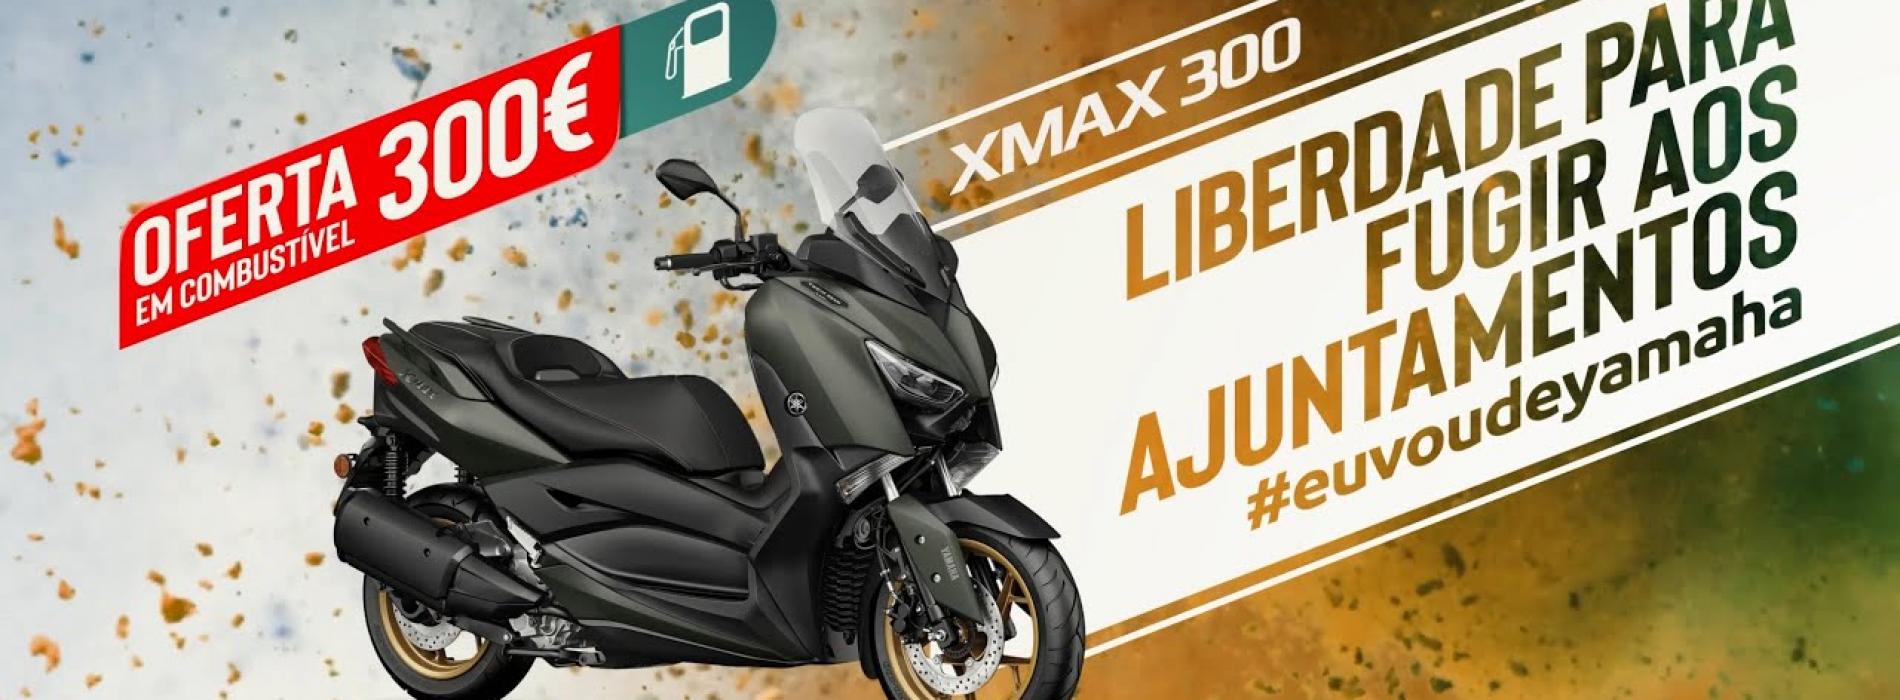 Nova Yamaha XMAX 300 com Oferta de Combustível (Video)